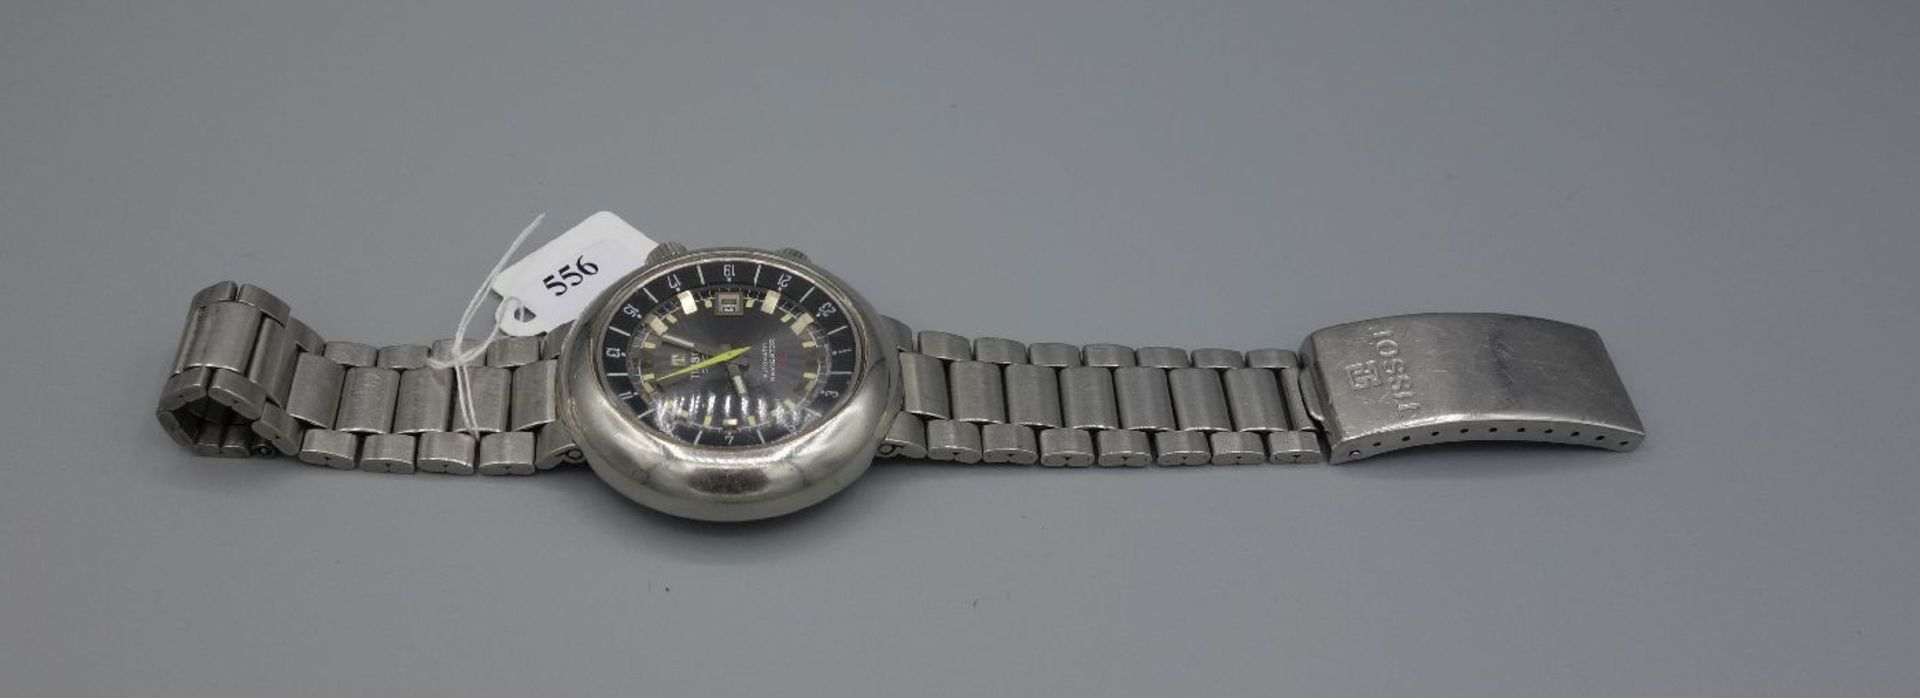 VINTAGE ARMBANDUHR: TISSOT NAVIGATOR T12 / wristwatch, 1970er Jahre, Manufaktur Tissot / Schweiz, - Image 3 of 8